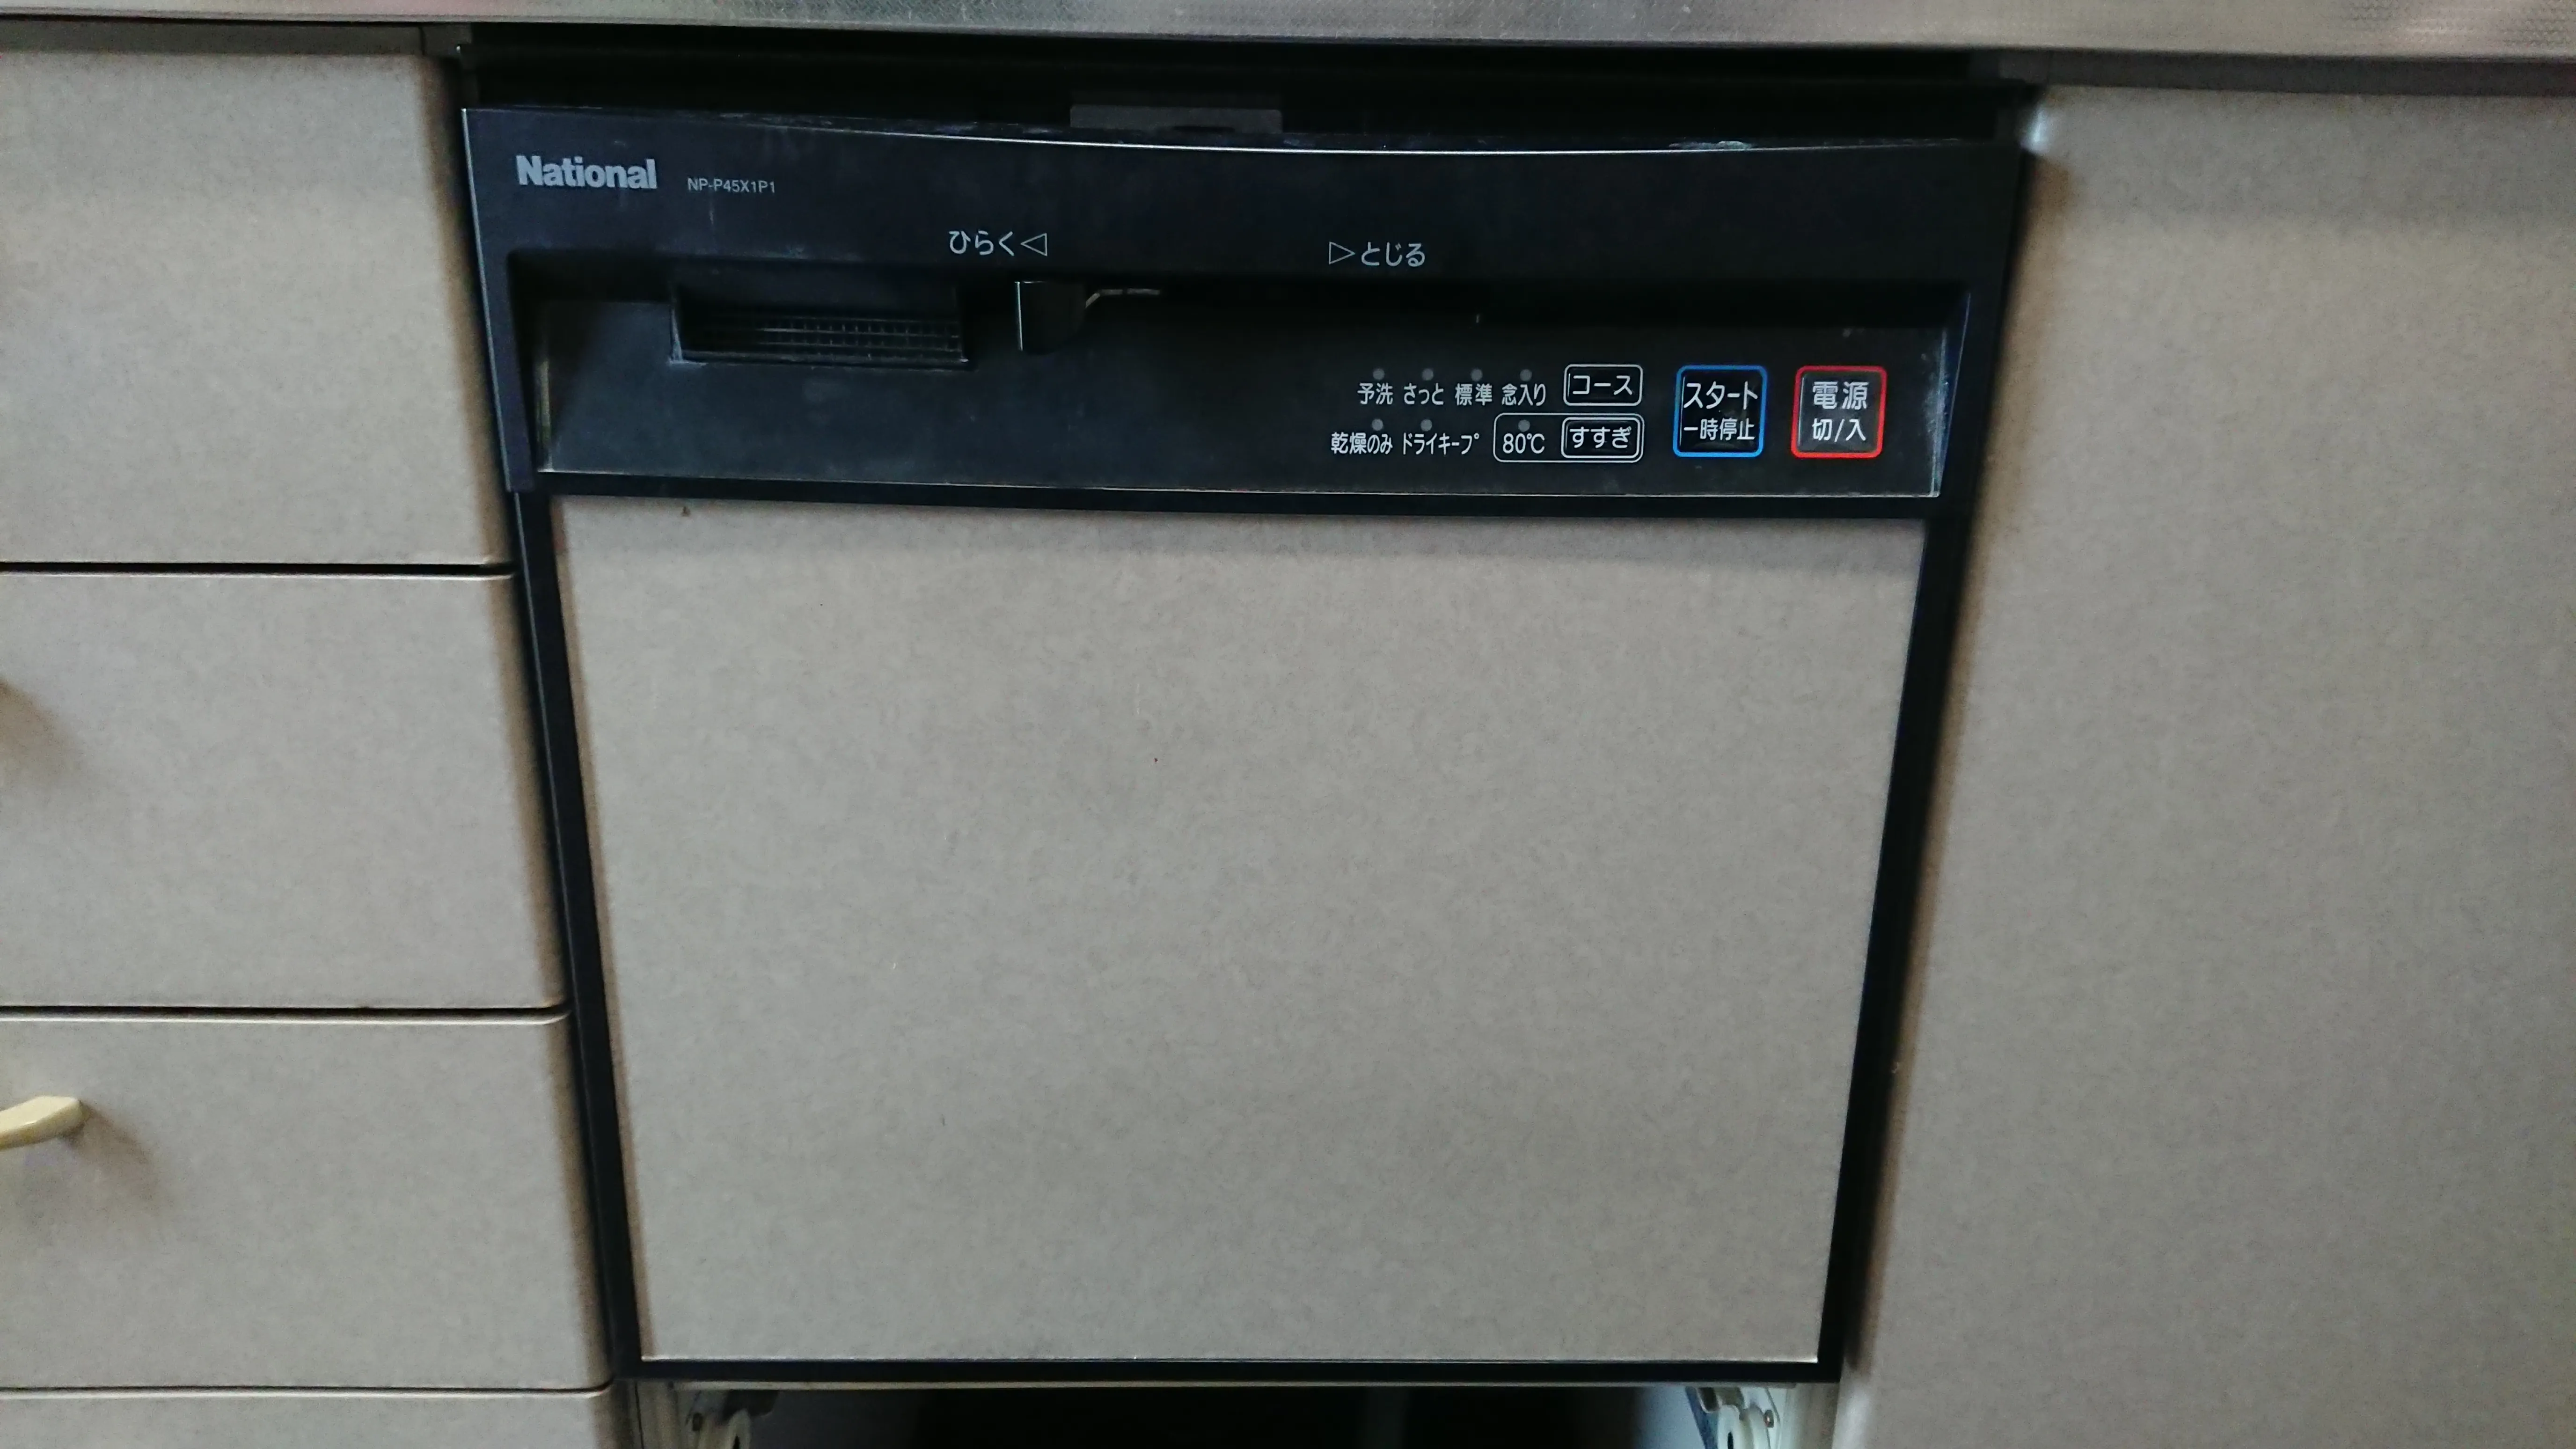 再入荷】 NP-45VS9S Panasonic パナソニック V9シリーズ ビルトイン食器洗い乾燥機 ミドルタイプ 幅45cm ドアパネル型 